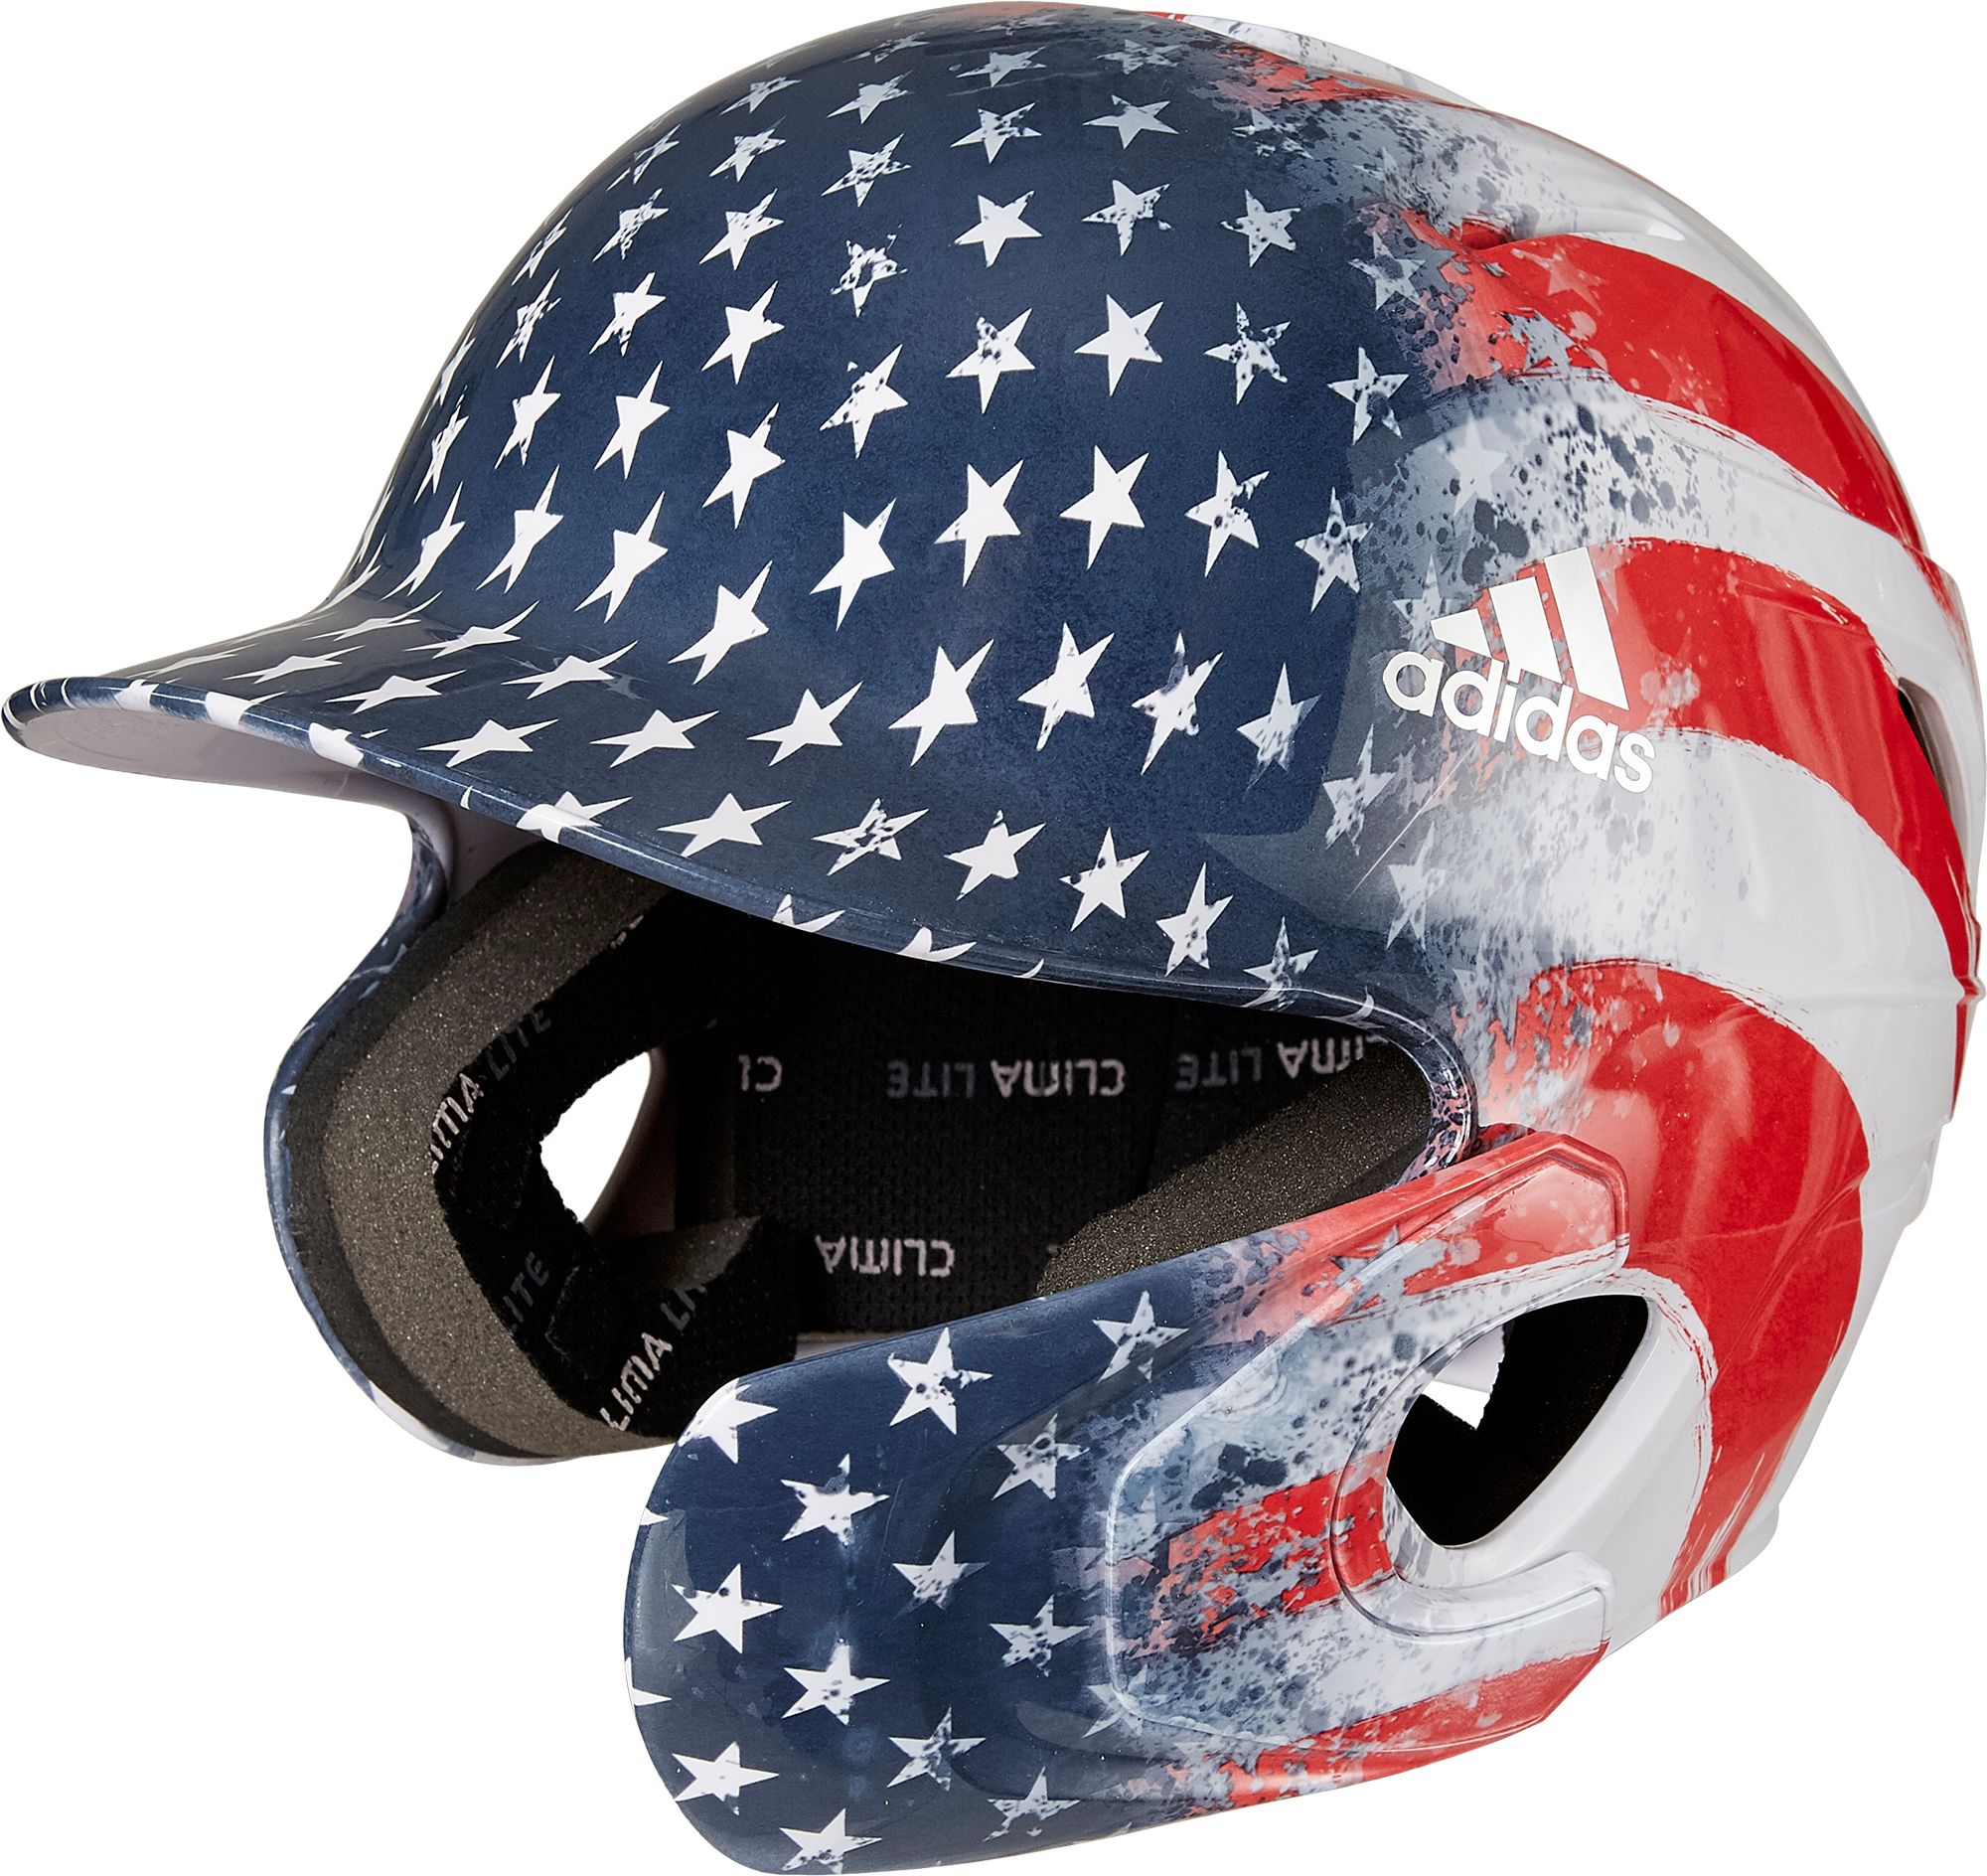 adidas baseball helmet face guard